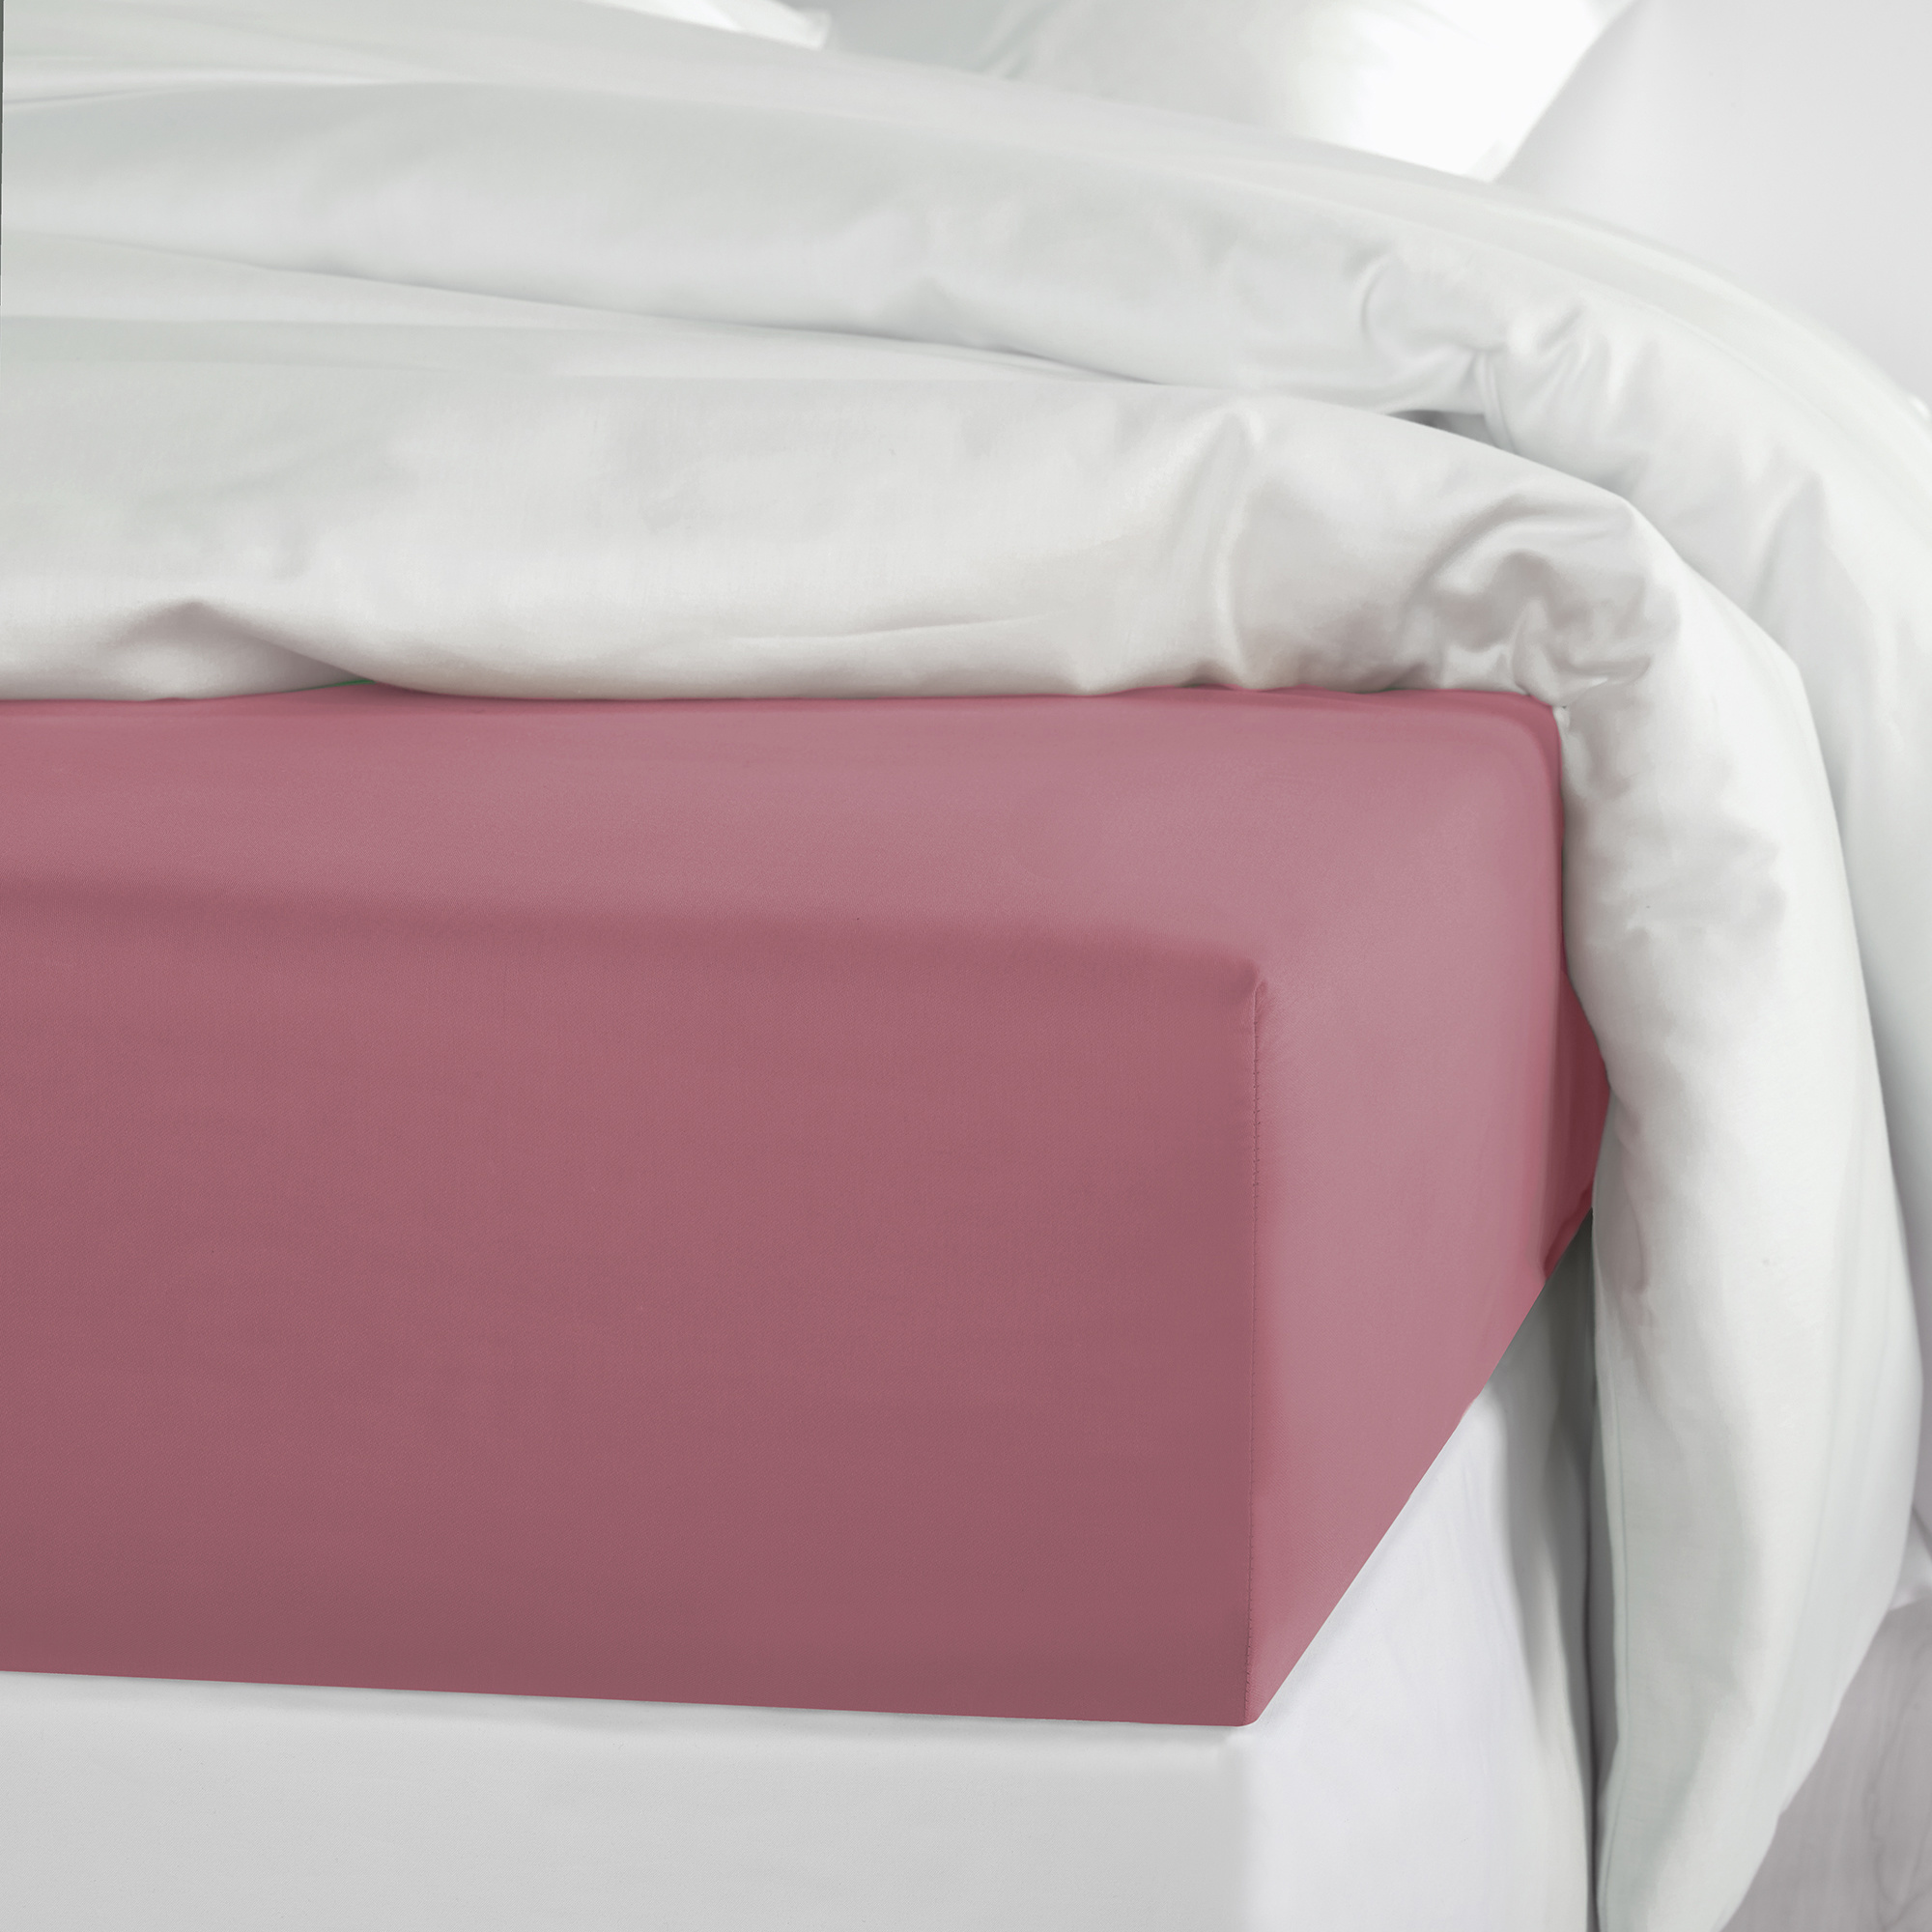 De Witte Lietaer Sheet set Olivia - Double - 280 x 280 cm - Pink - Satin cotton